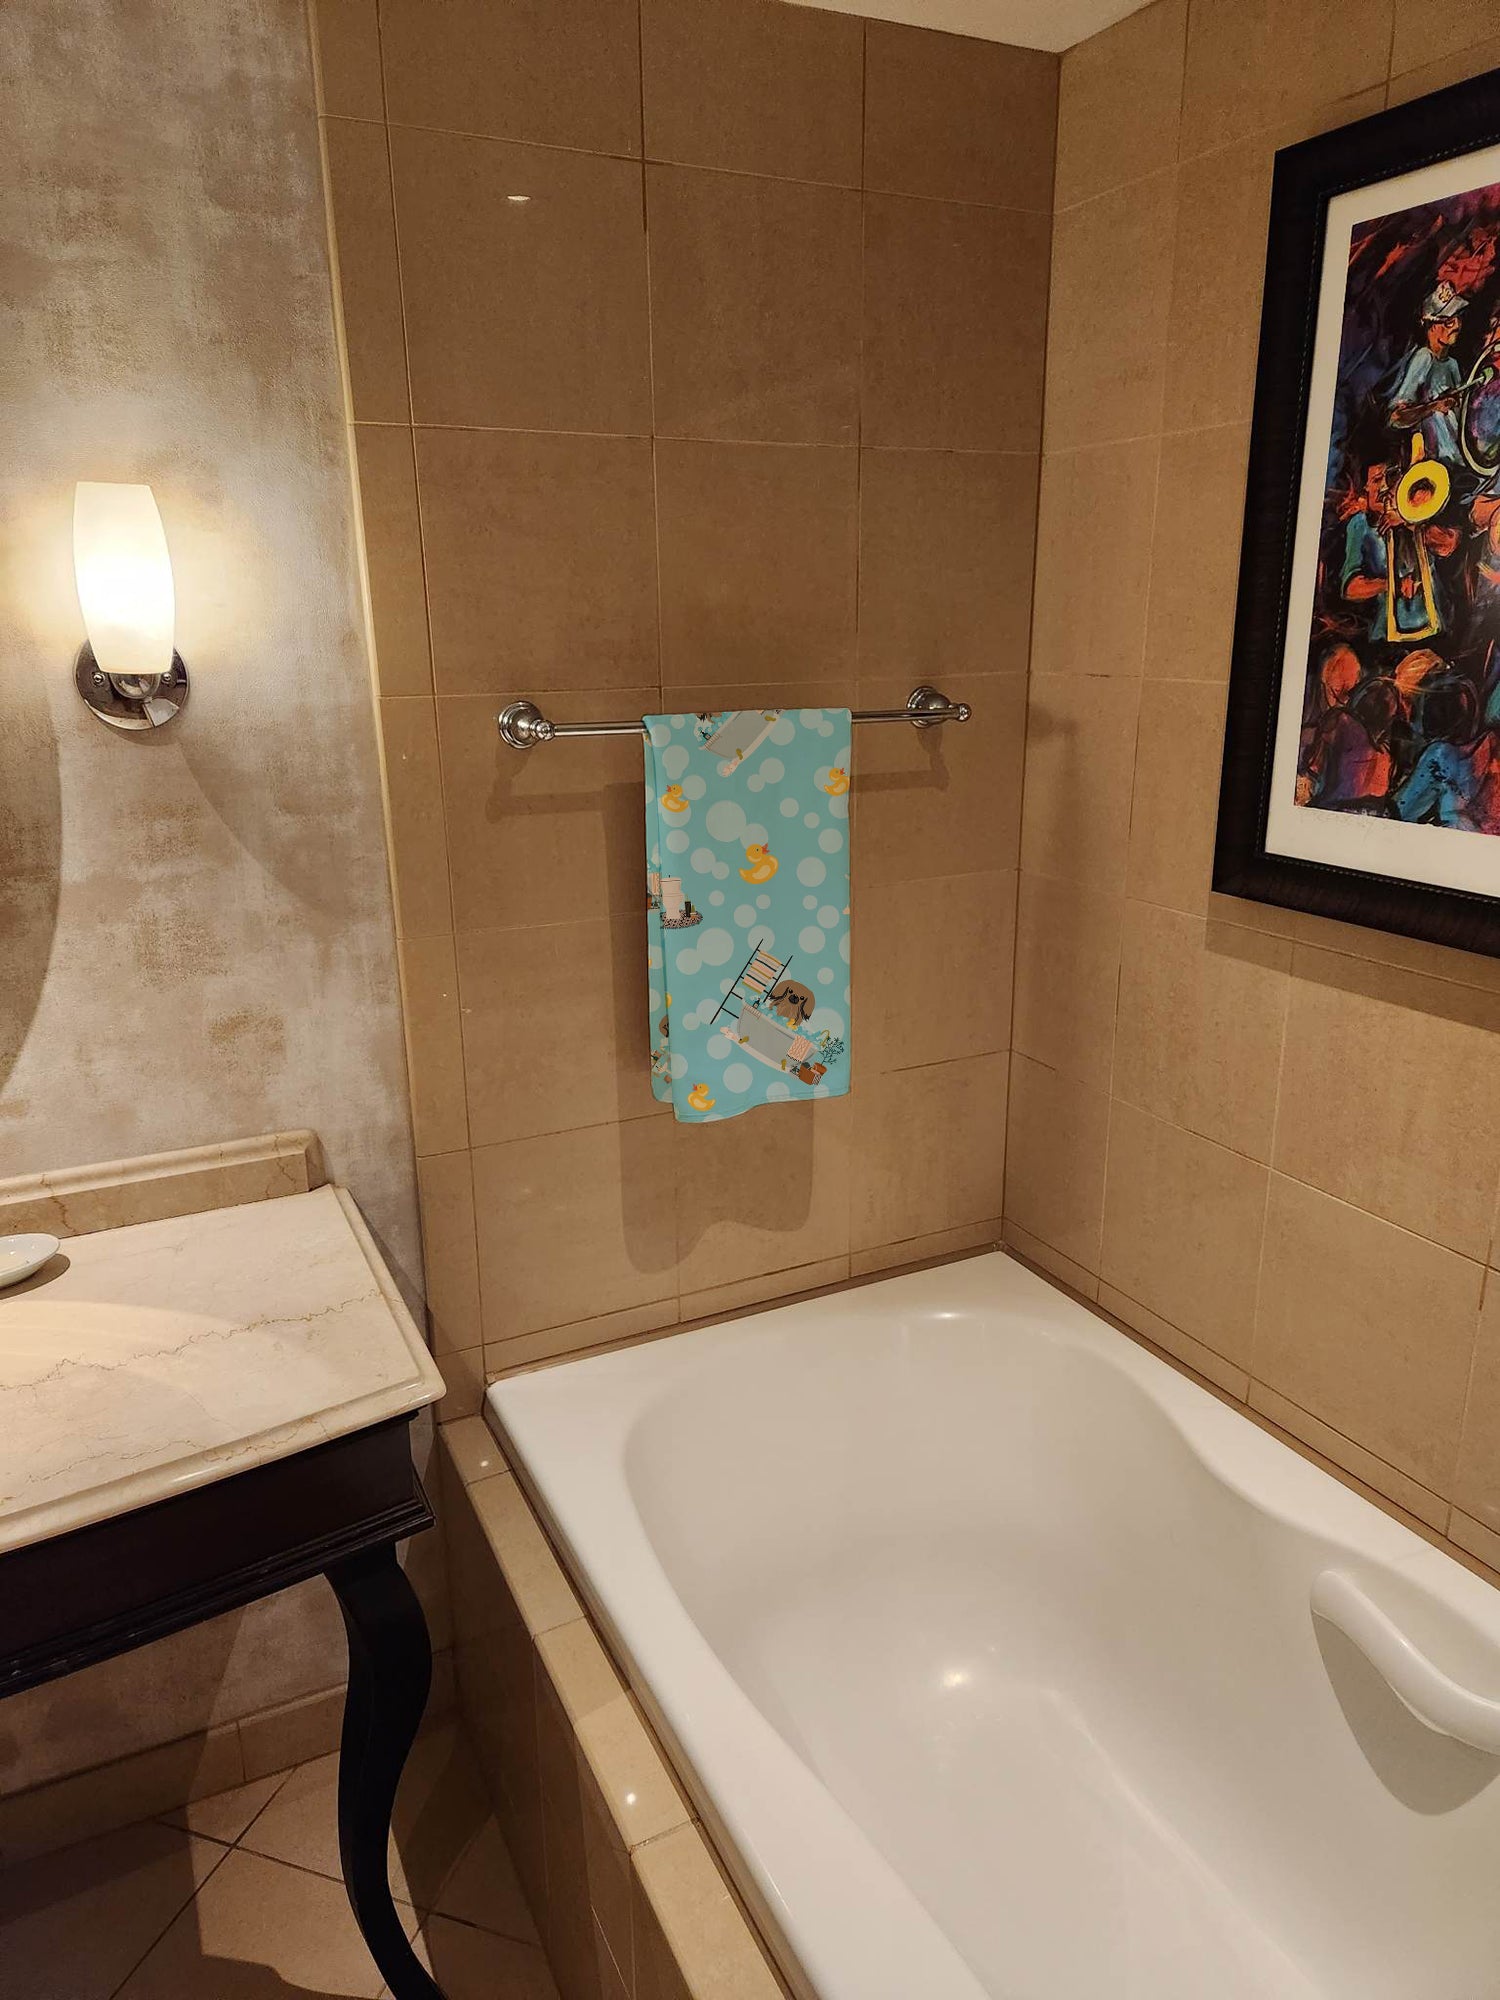 Buy this Tan Pekingese in Bathtub Bath Towel Large